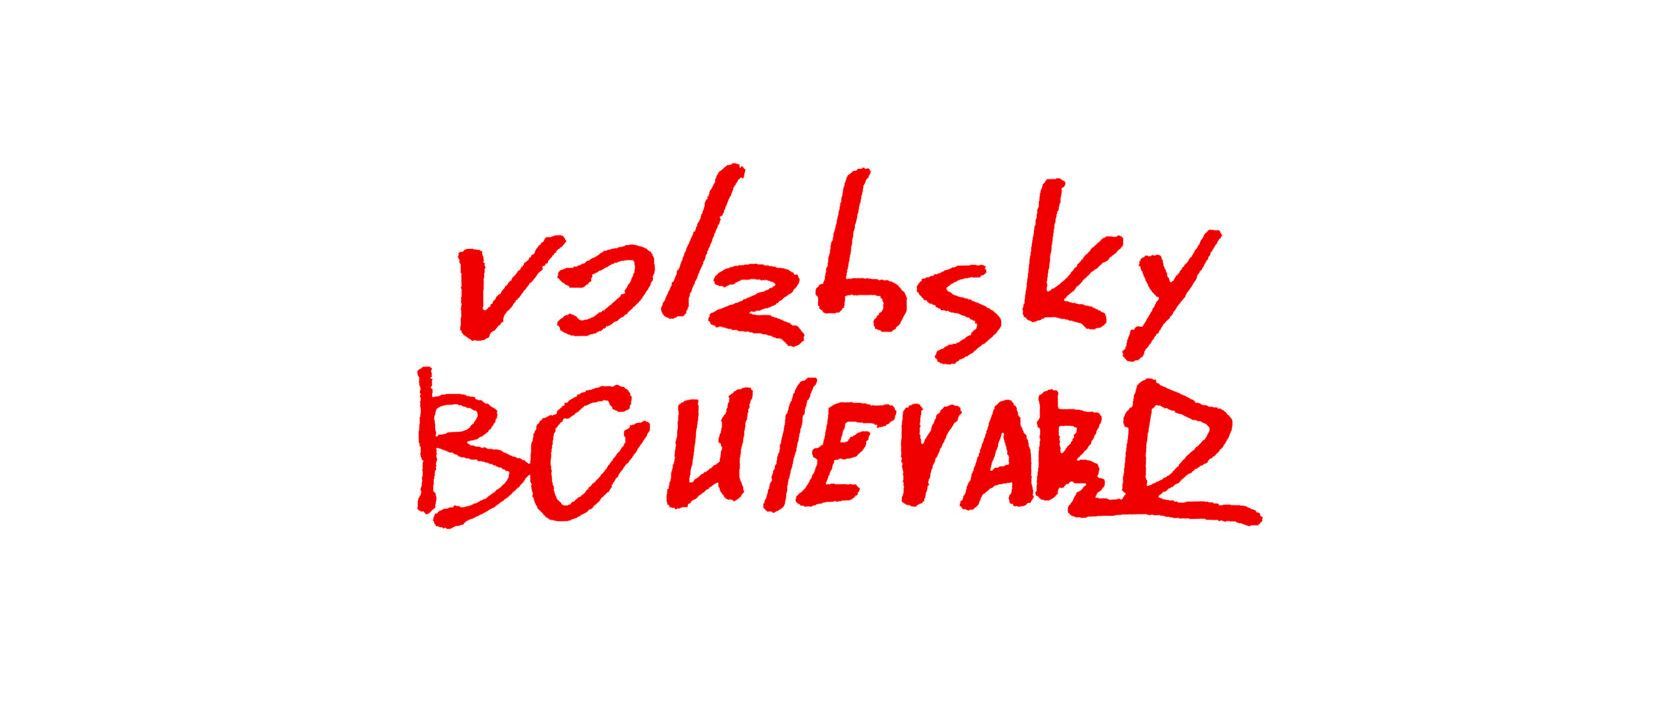 VOLZHSKY BOULEVARD